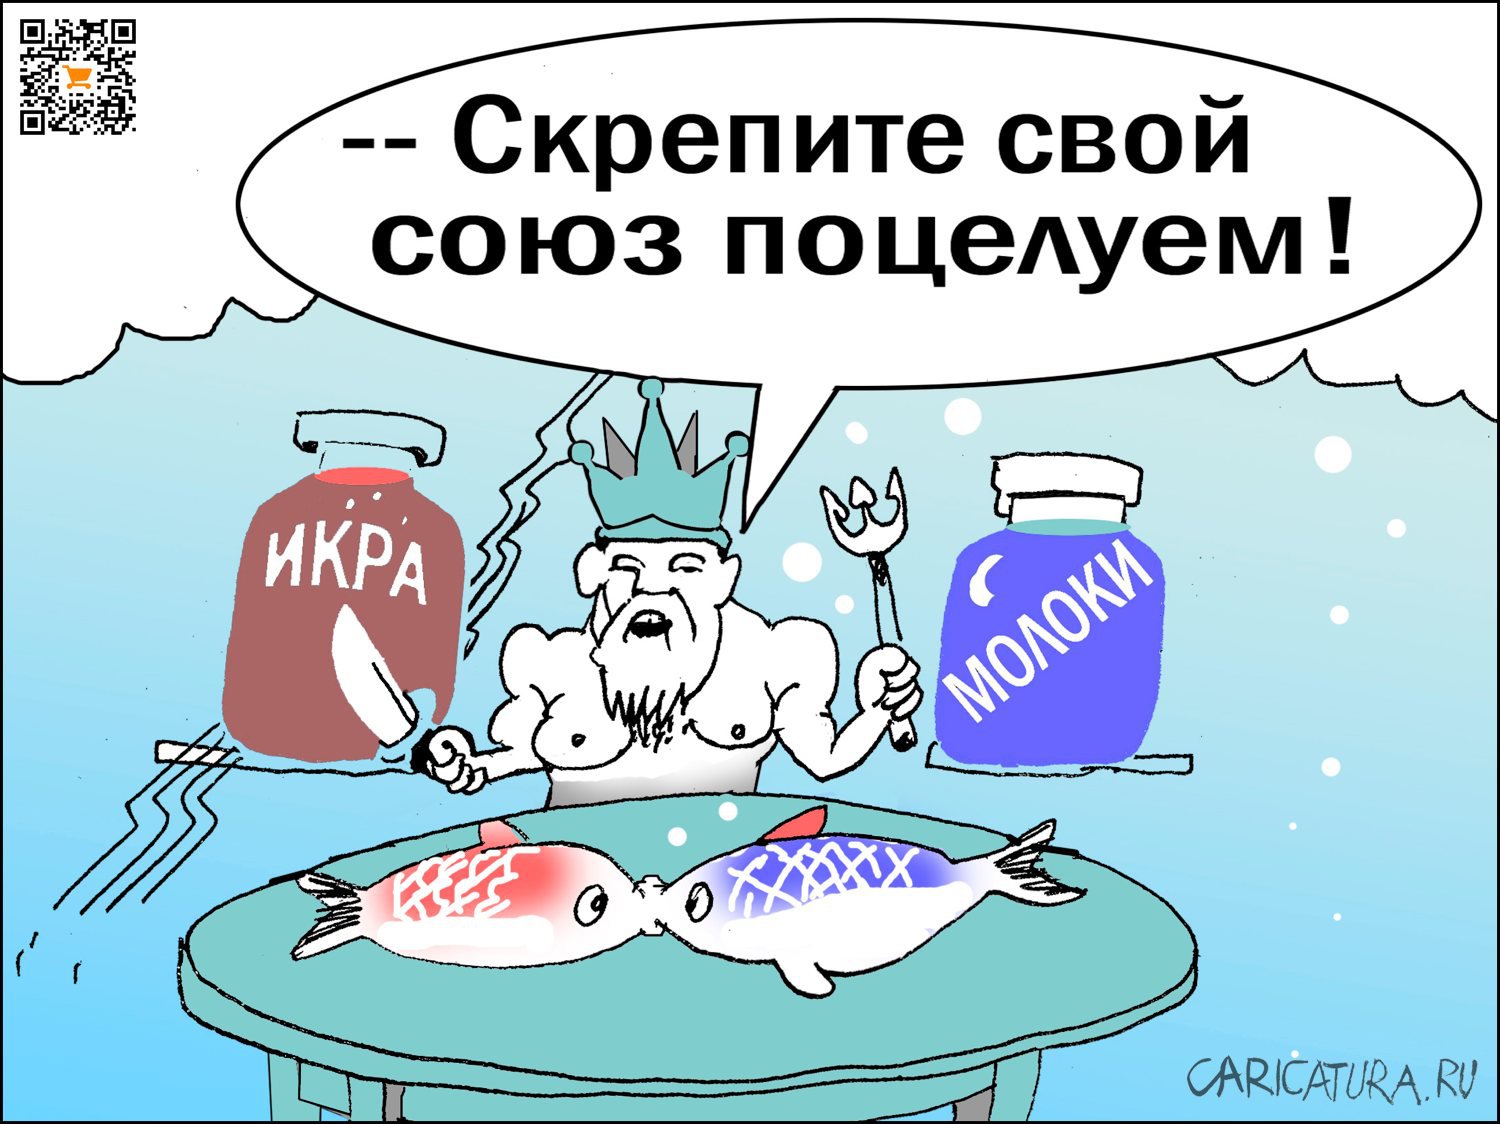 Карикатура "Рыба из пробирки", Александр Уваров